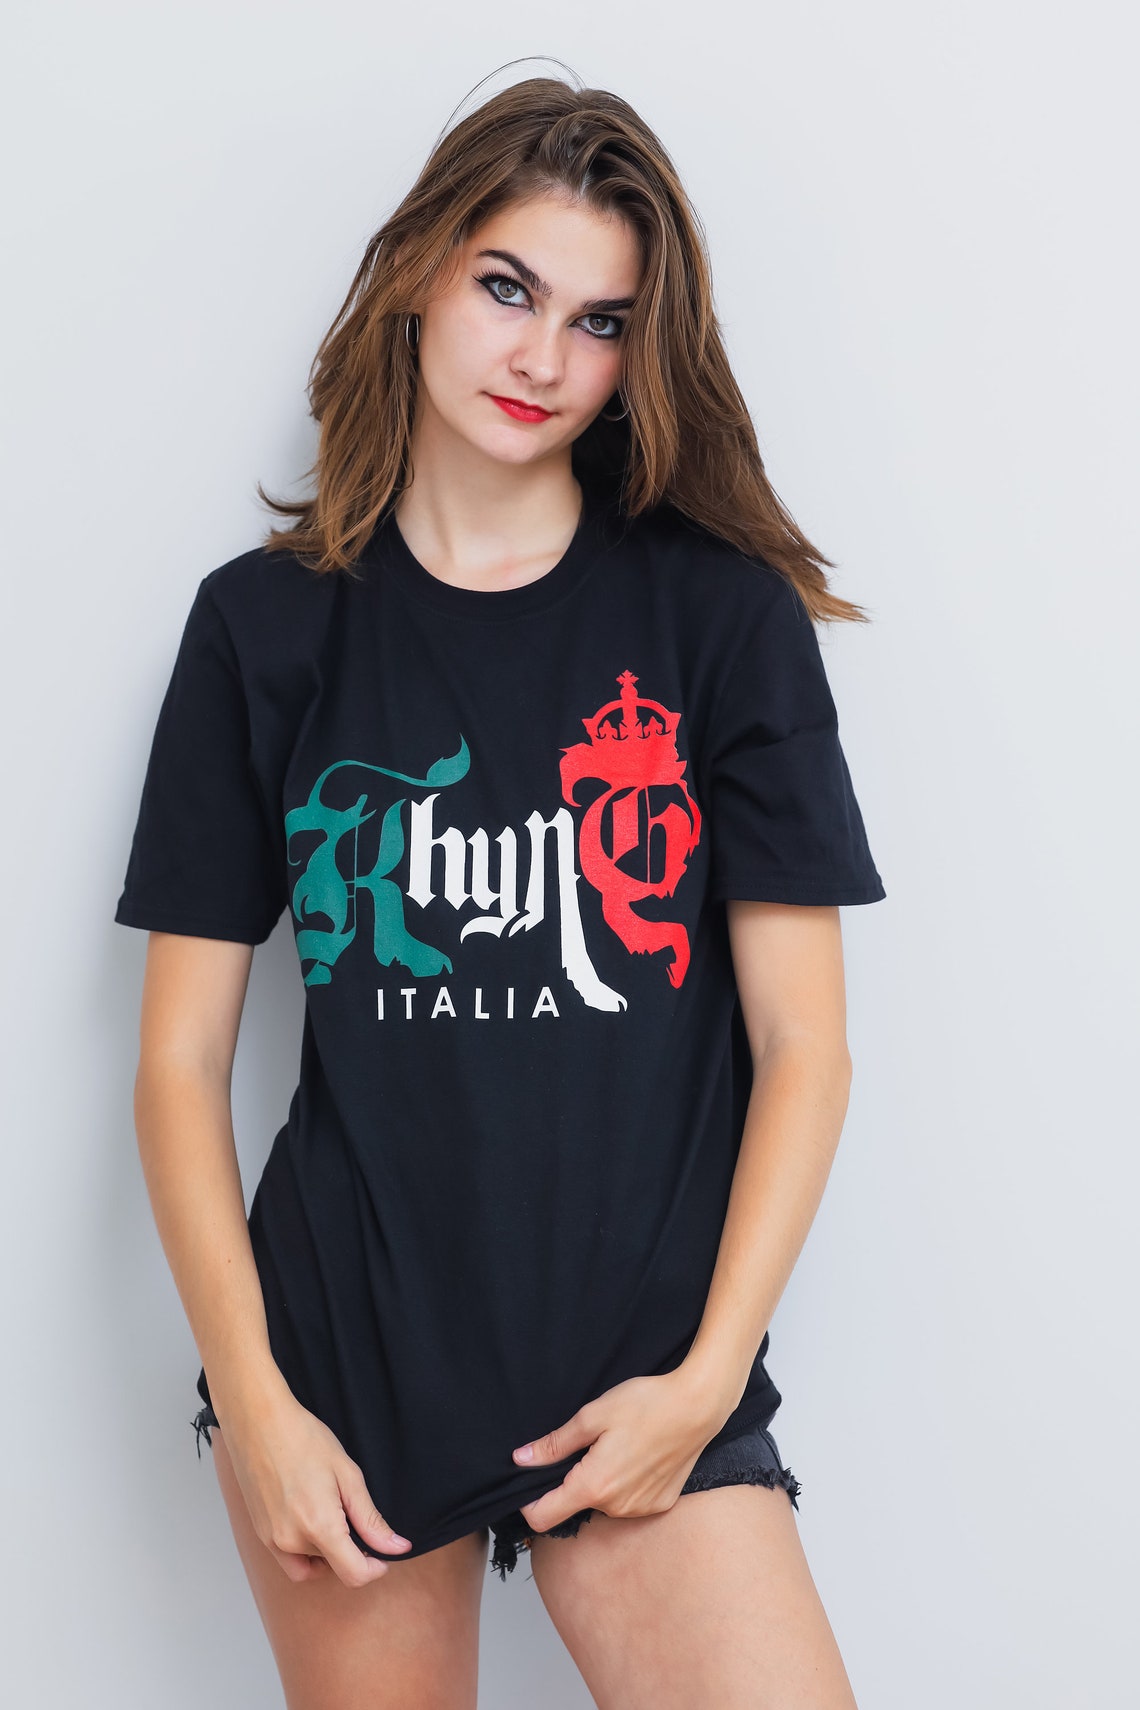 Italy Shirt Etsy